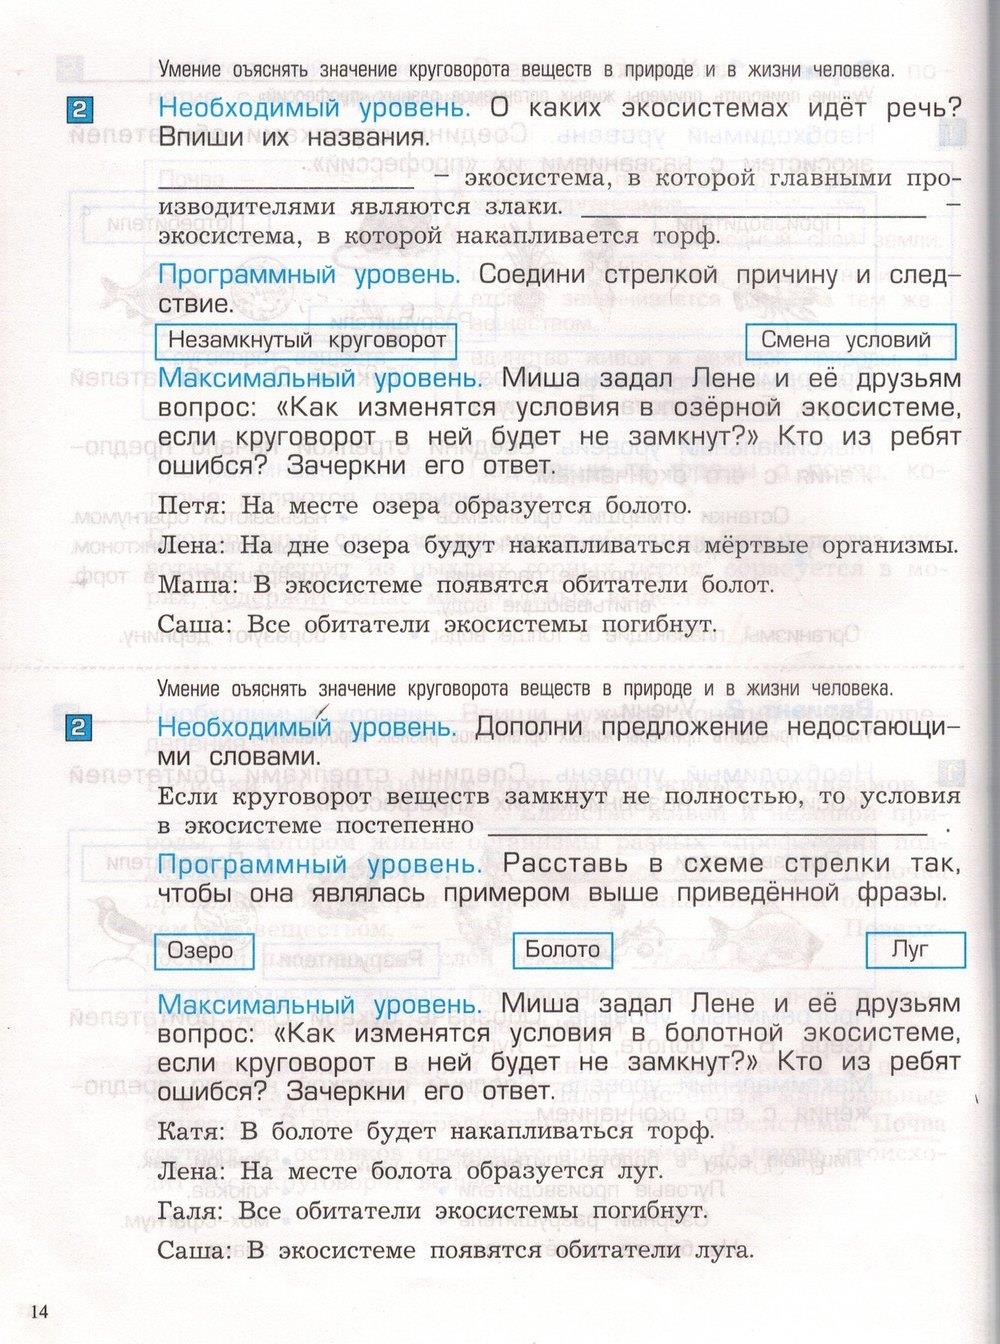 гдз 3 класс проверочные и контрольные работы часть 1 страница 14 окружающий мир Вахрушев, Бурский, Родыгина